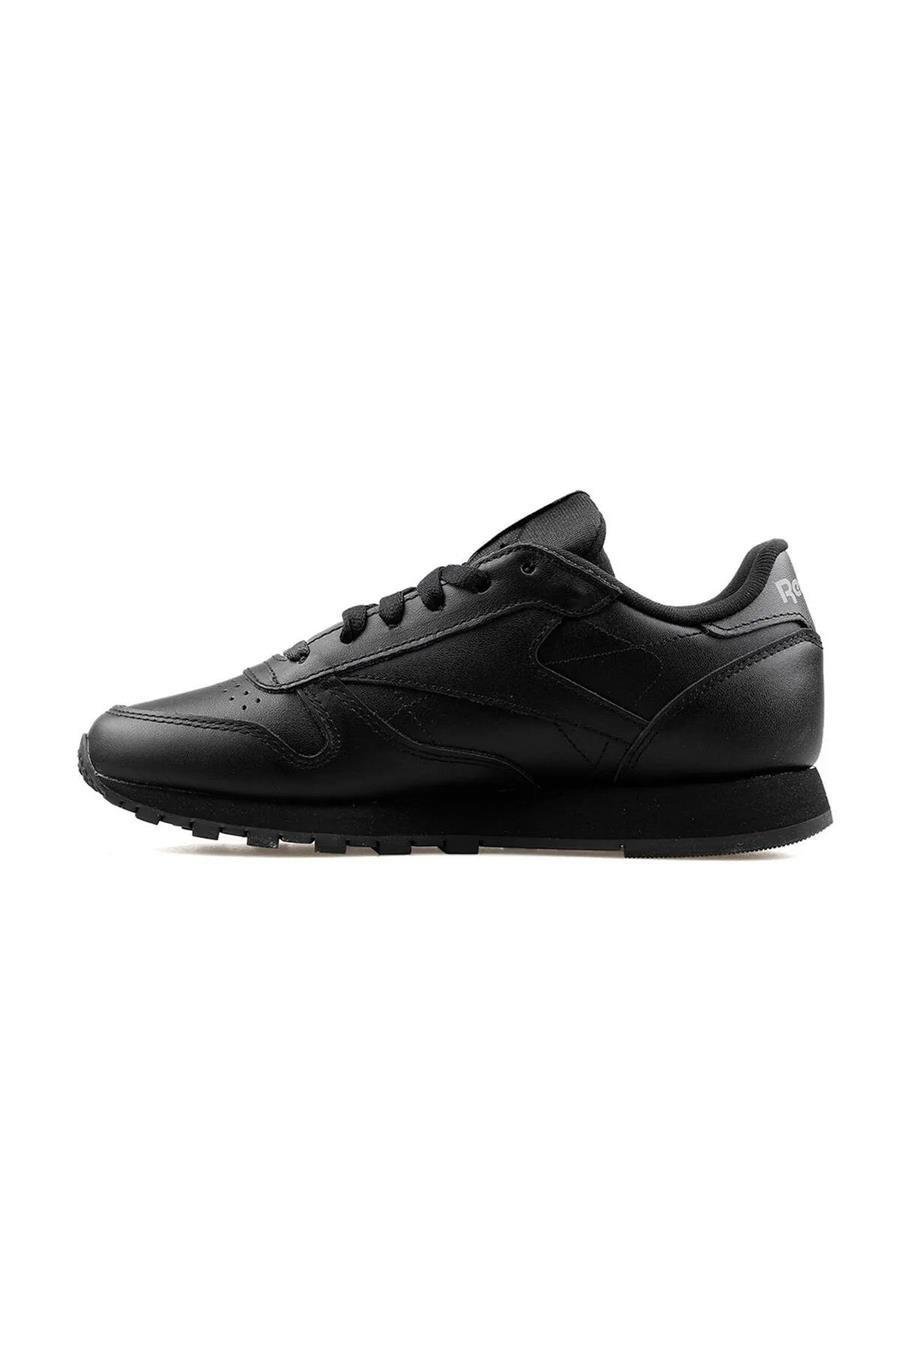 Reebok 101423656 Siyah Yetişkin Unisex Classıc Leather Sneaker Ayakkabı